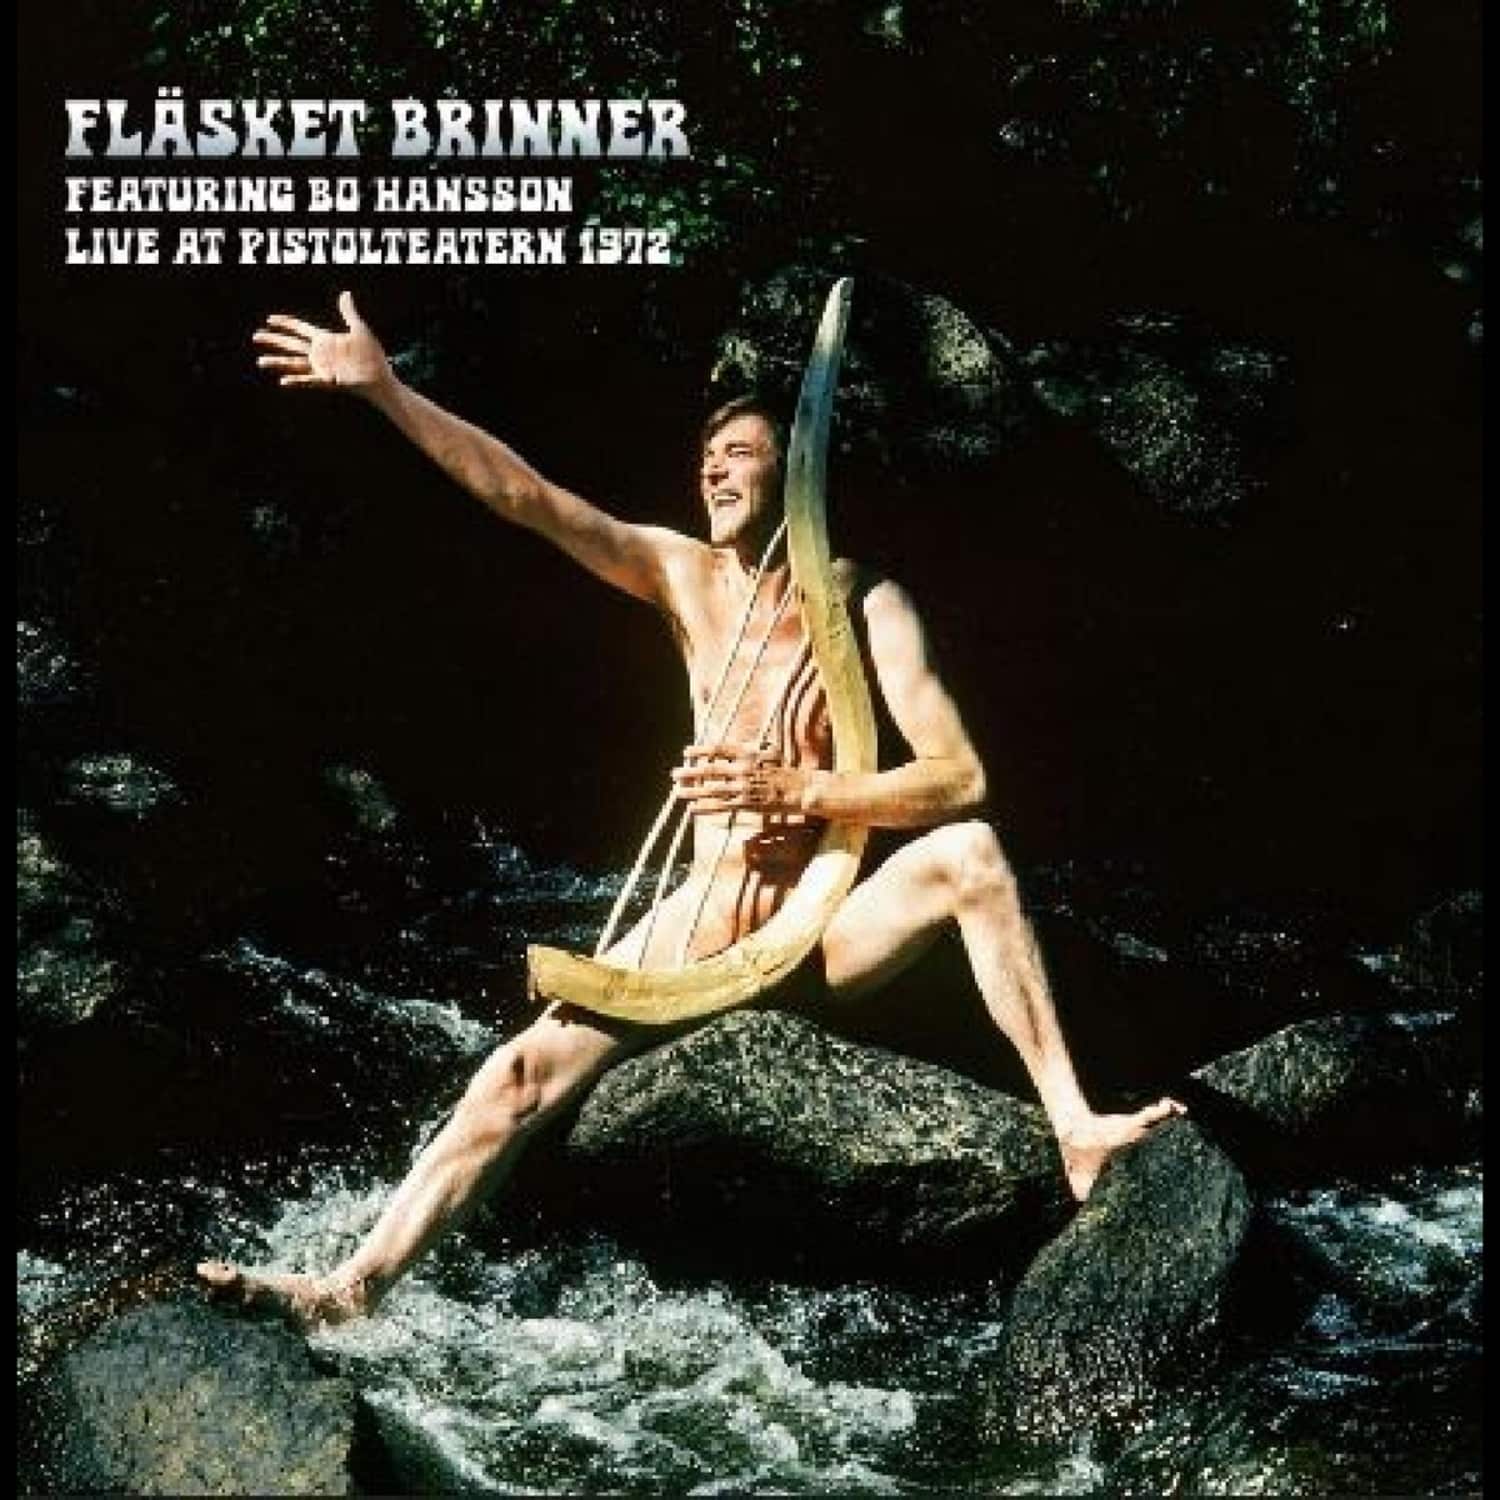 Flasket Brinner - LIVE AT PISTOLTEATERN 1972 